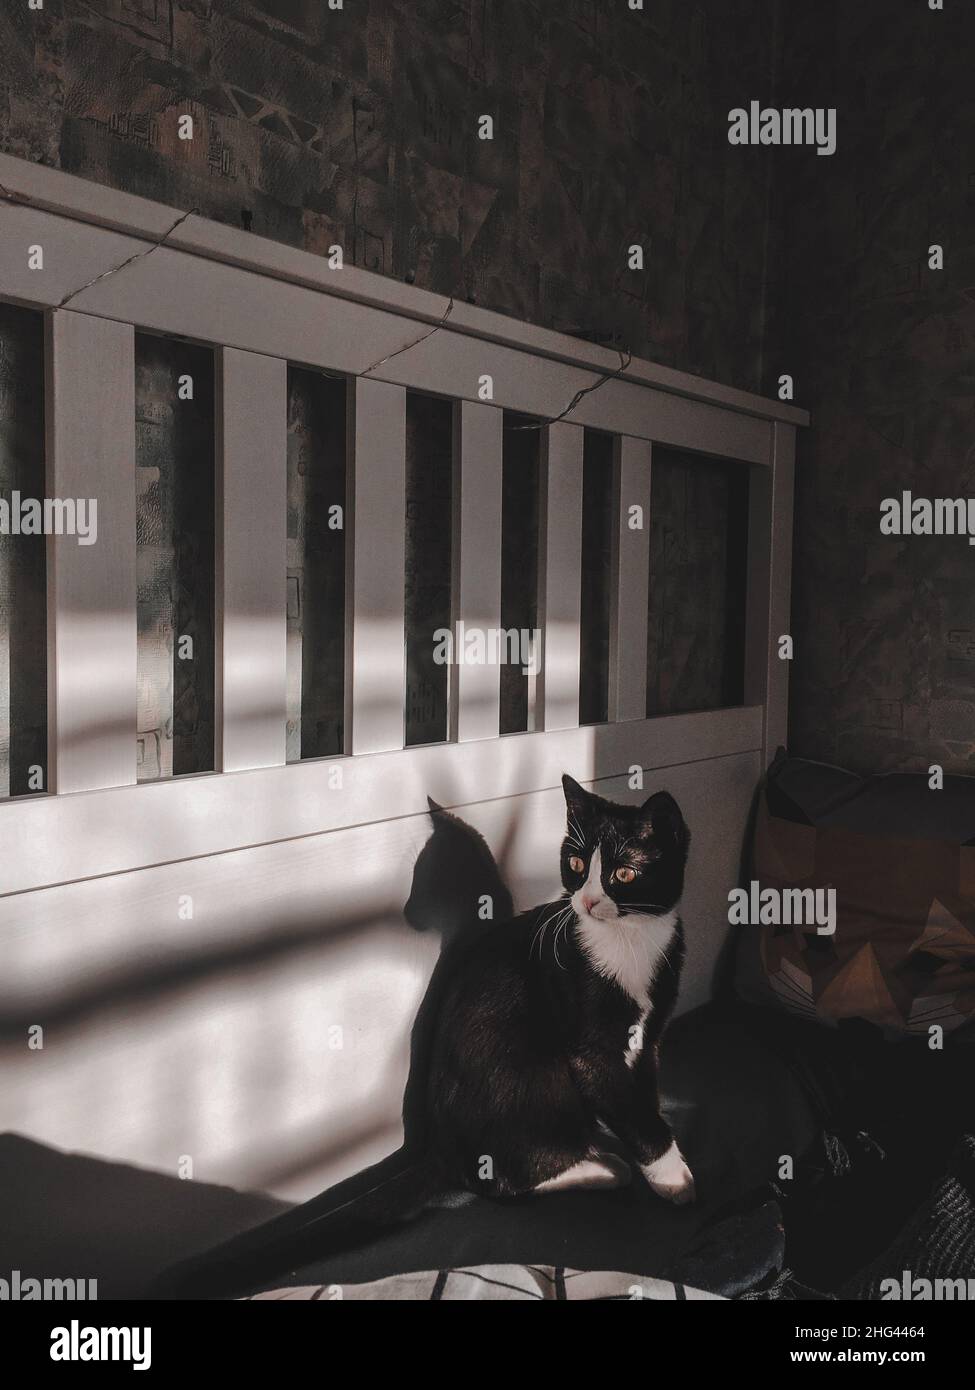 Un chat noir avec un collier blanc est assis sur un lit en bois blanc et regarder.Magnifique intérieur dans lequel le soleil de printemps brille Banque D'Images